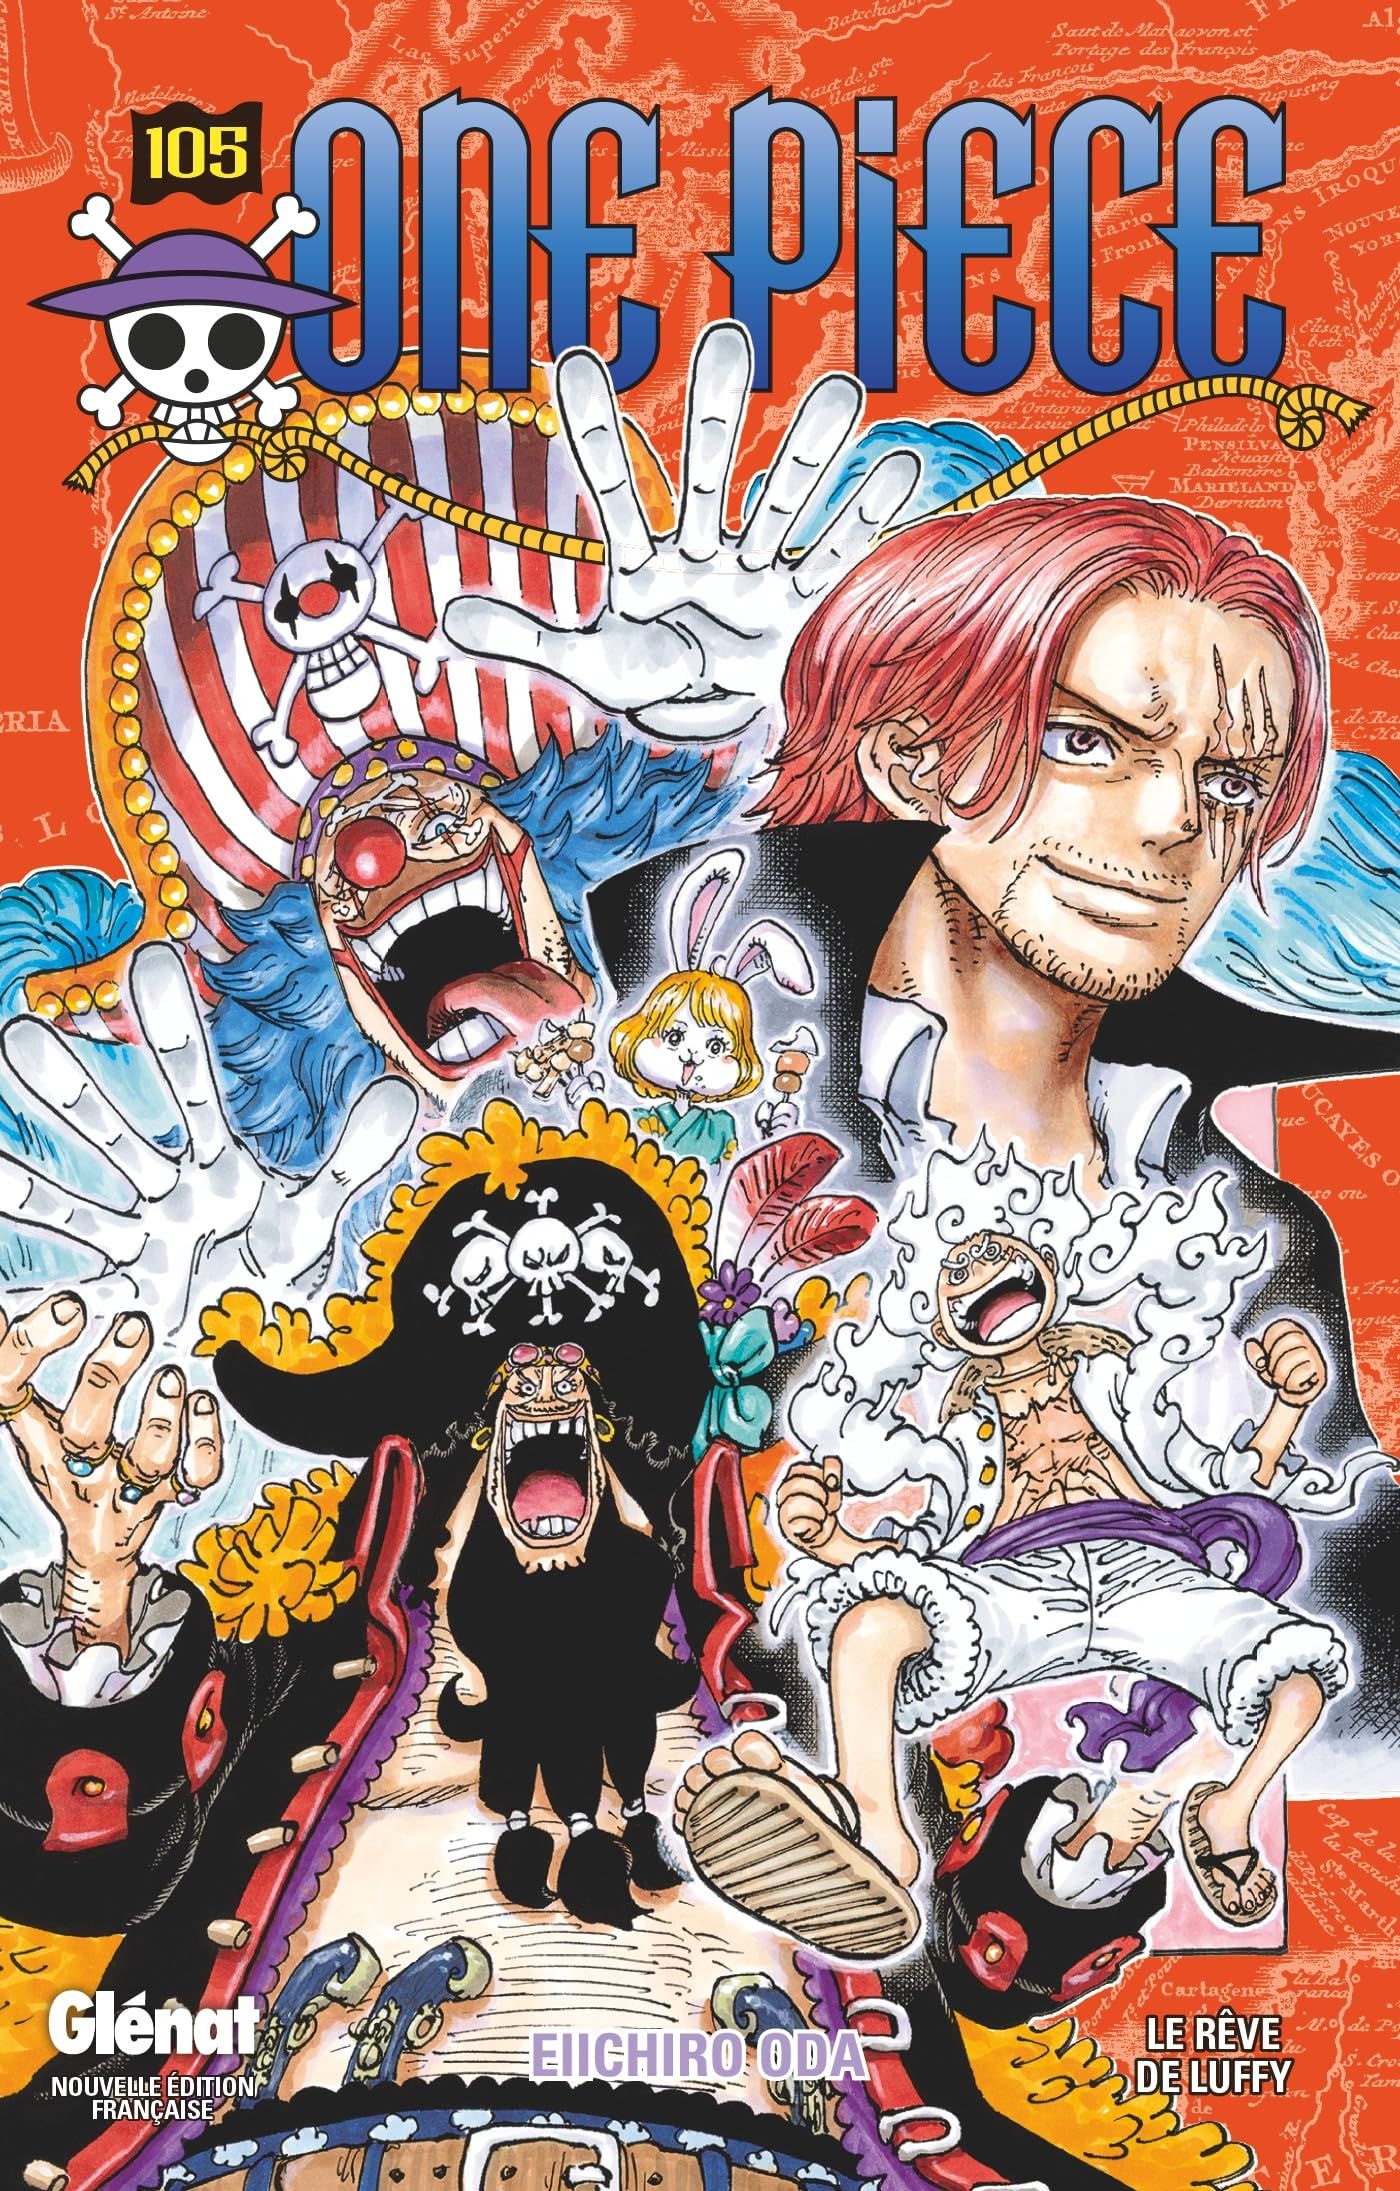 La Nuit One Piece revient en septembre !1